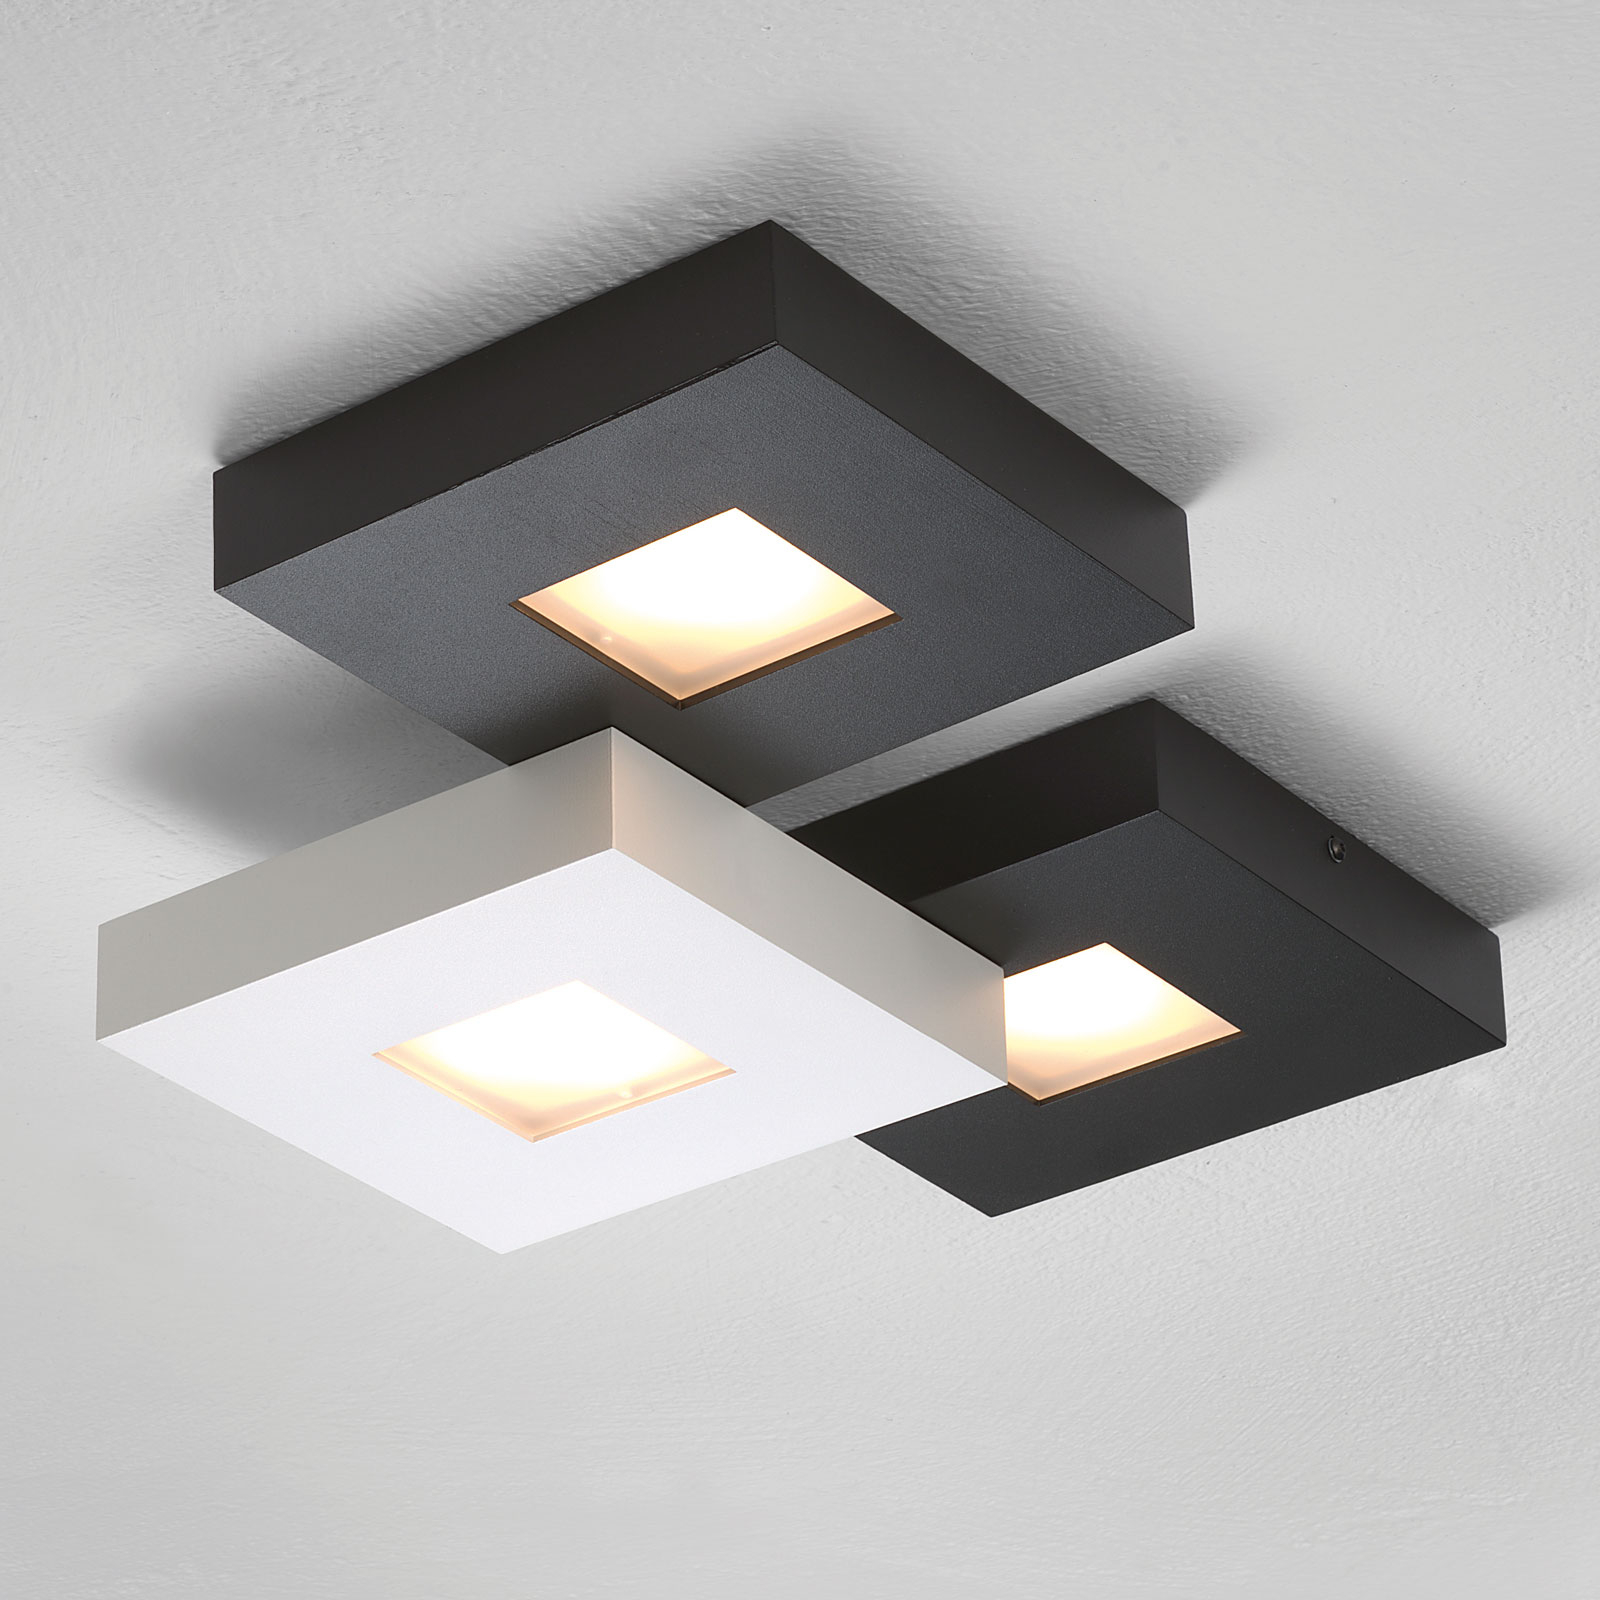 LED-taklampe Cubus med 3 lys, svart-hvit